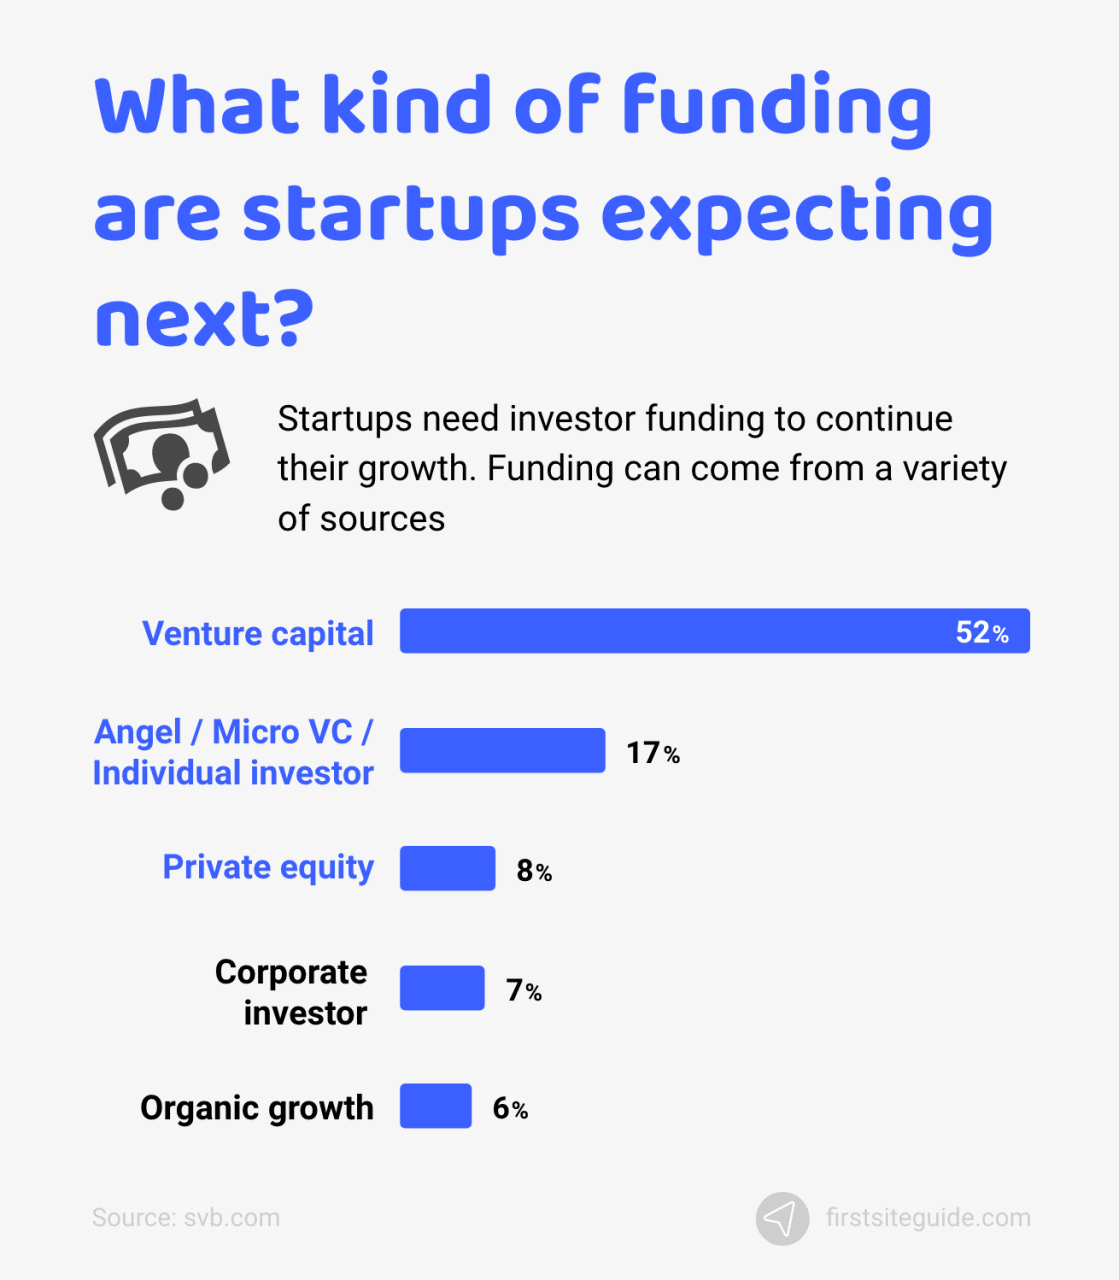 ¿Qué tipo de financiación esperan las startups a continuación?